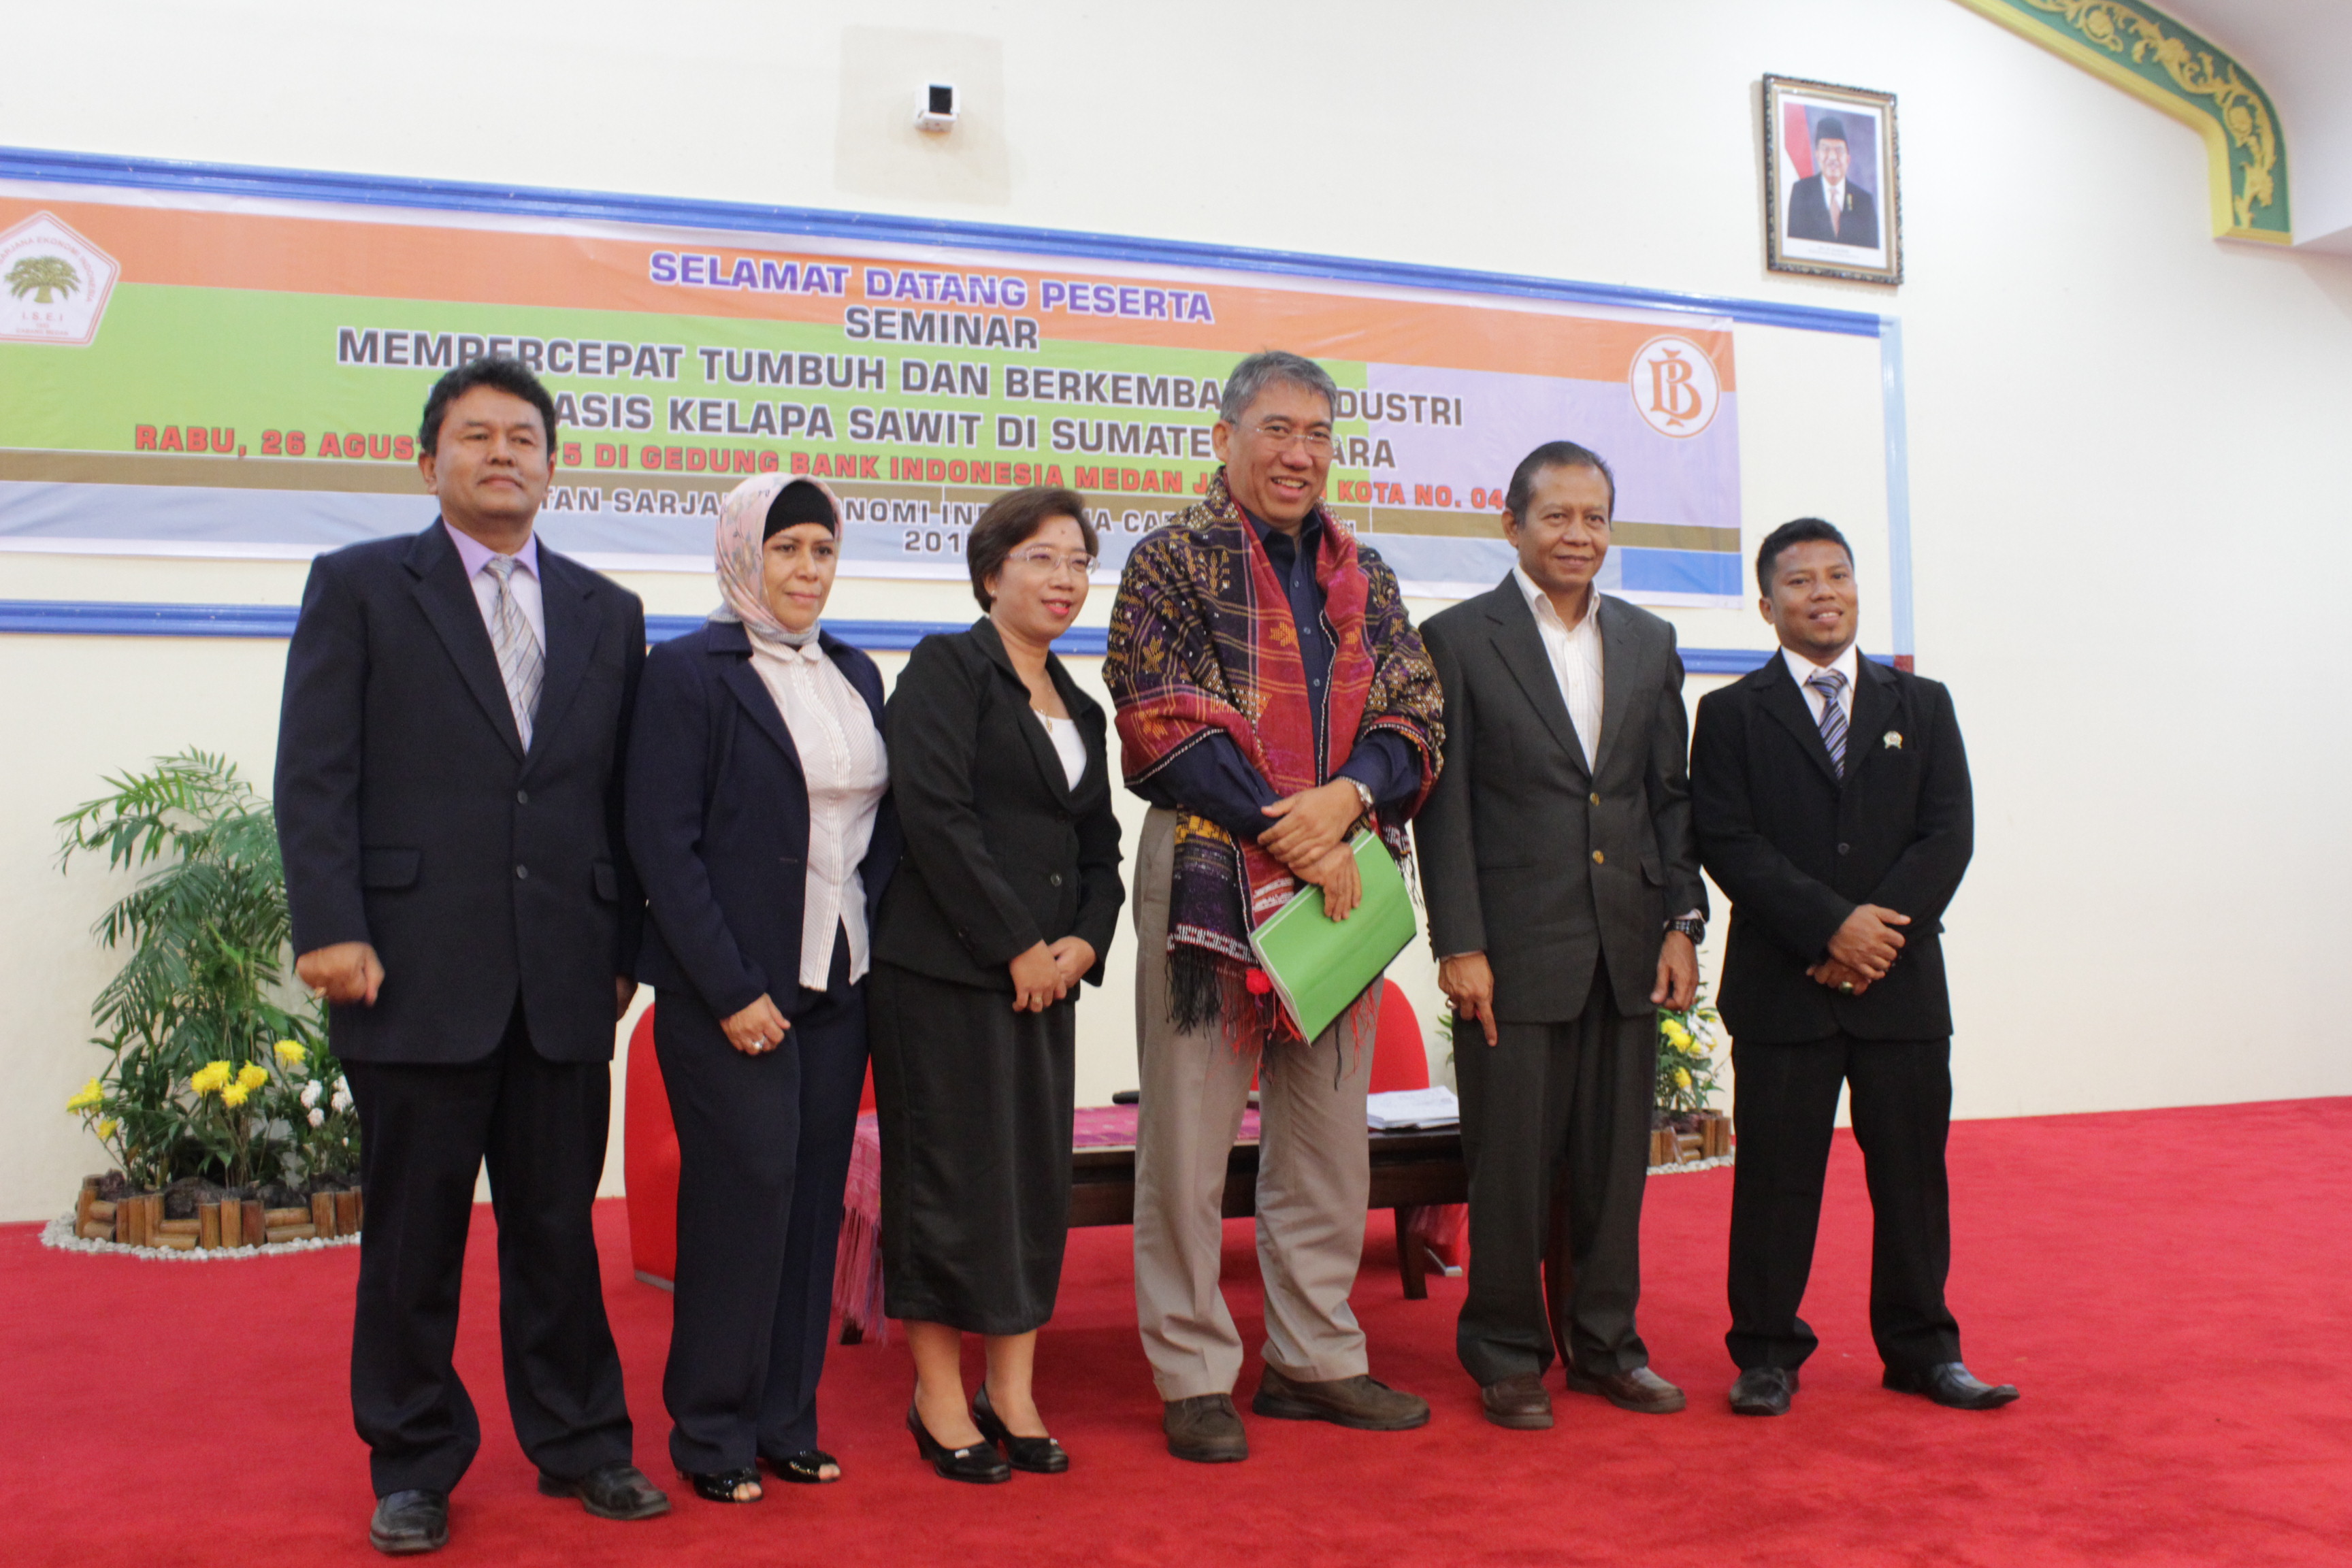 seminar-nasional-mempercepat-tumbuh-dan-berkembang-industri-berbasis-kelapa-sawit-di-sumatera-utara_12.jpg